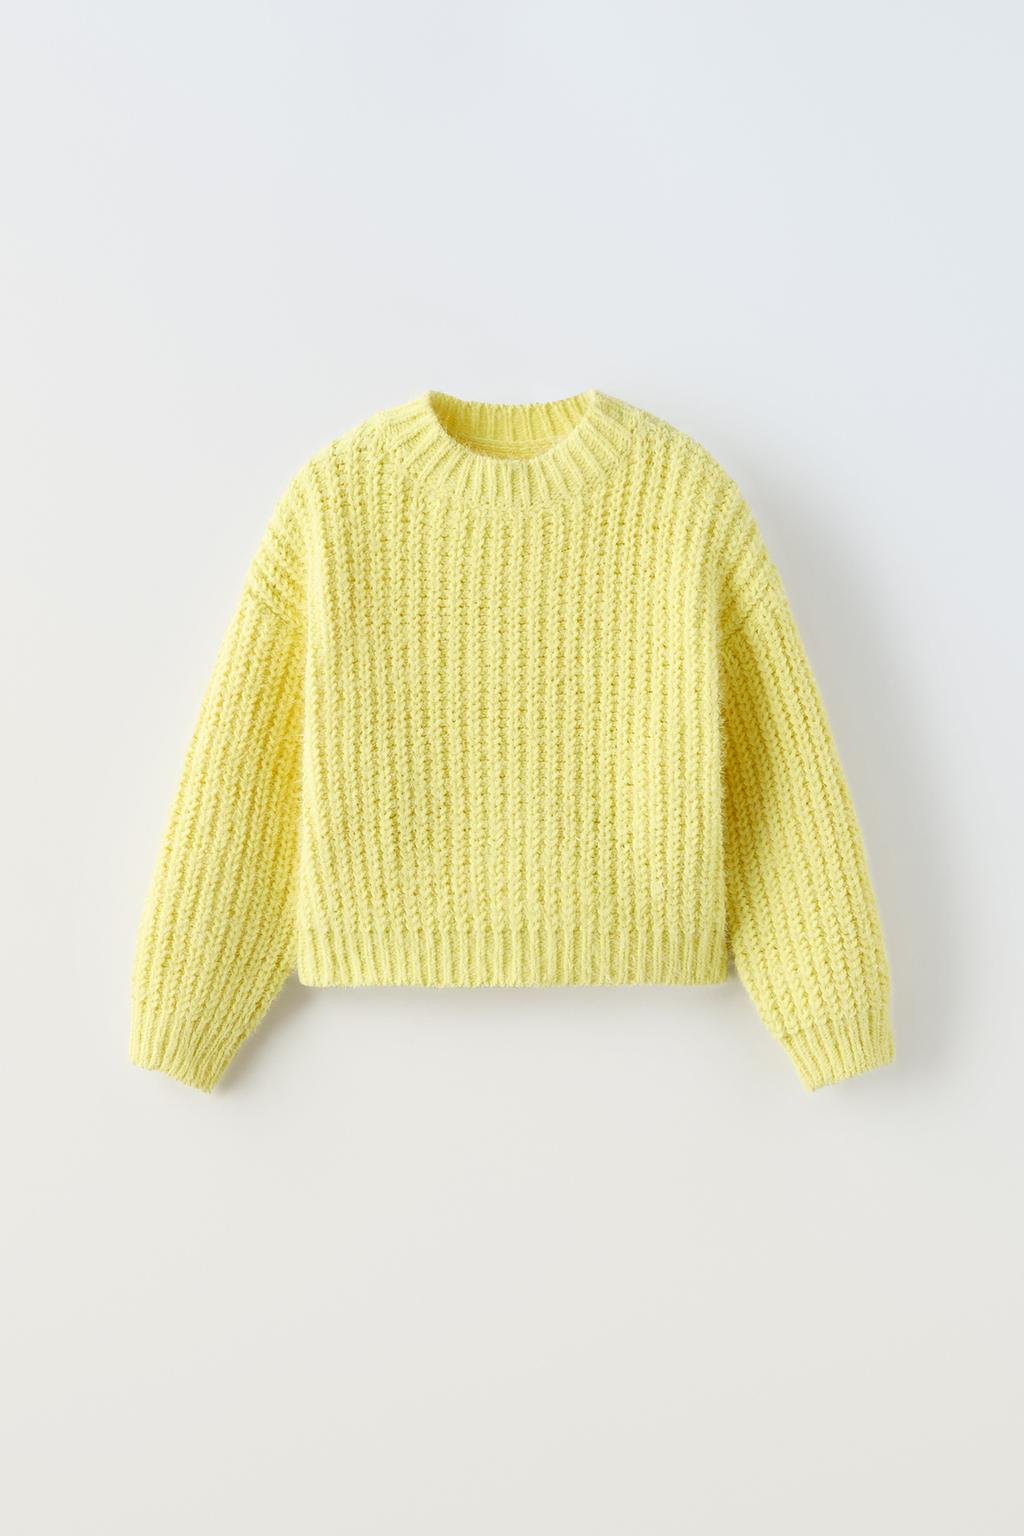 Трикотажный свитер ZARA, желтый трикотажный свитер zara персик